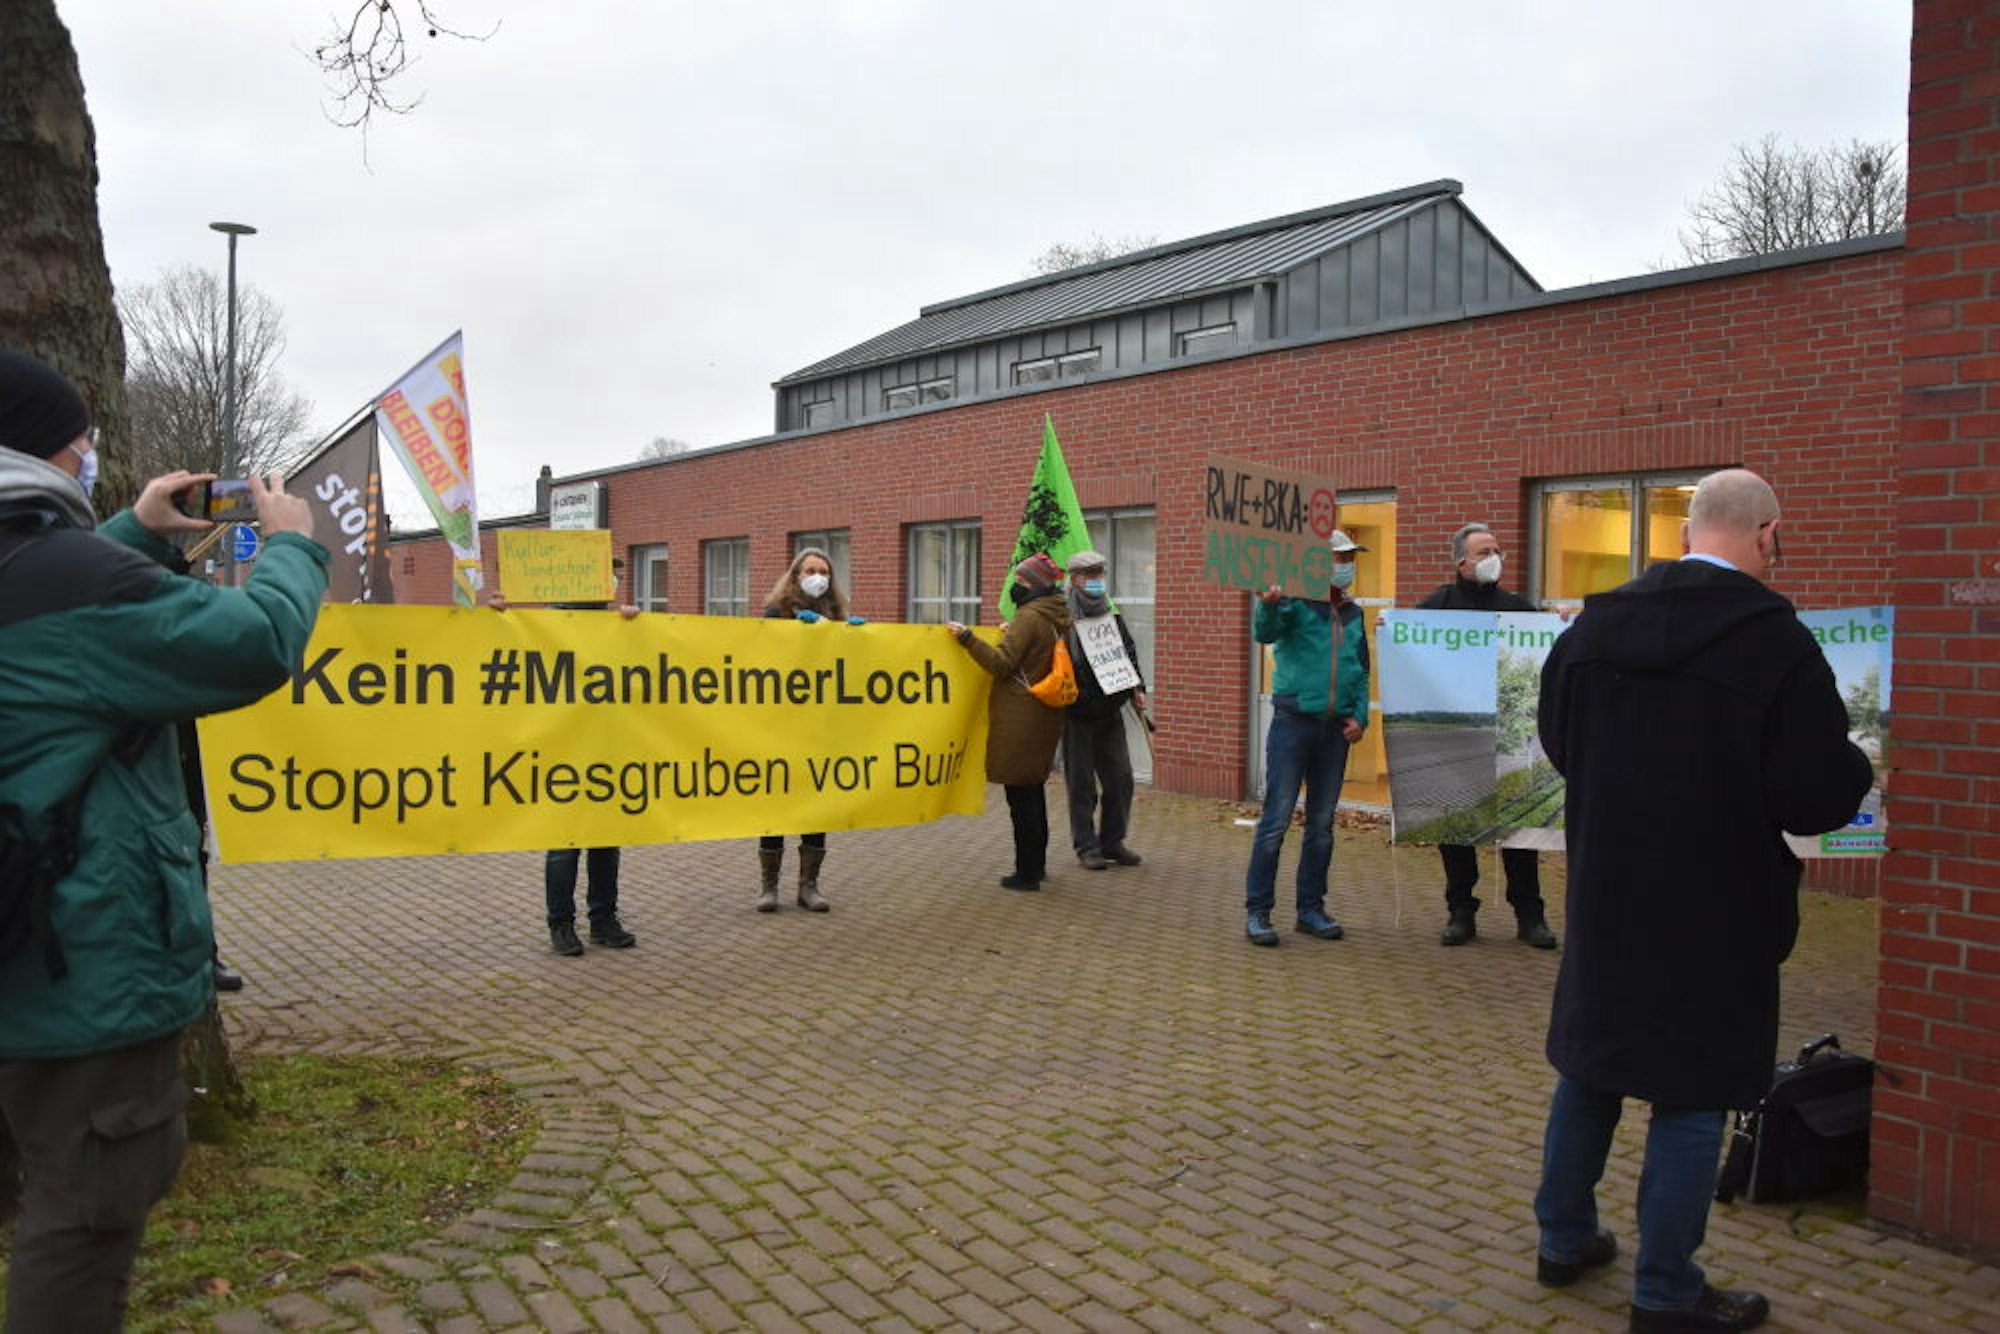 Vor der Jahnhalle demonstrierte eine Gruppe ebenfalls gegen das Abgraben der Manheimer Buch und auch gegen weitere Kiesgruben bei Buir.